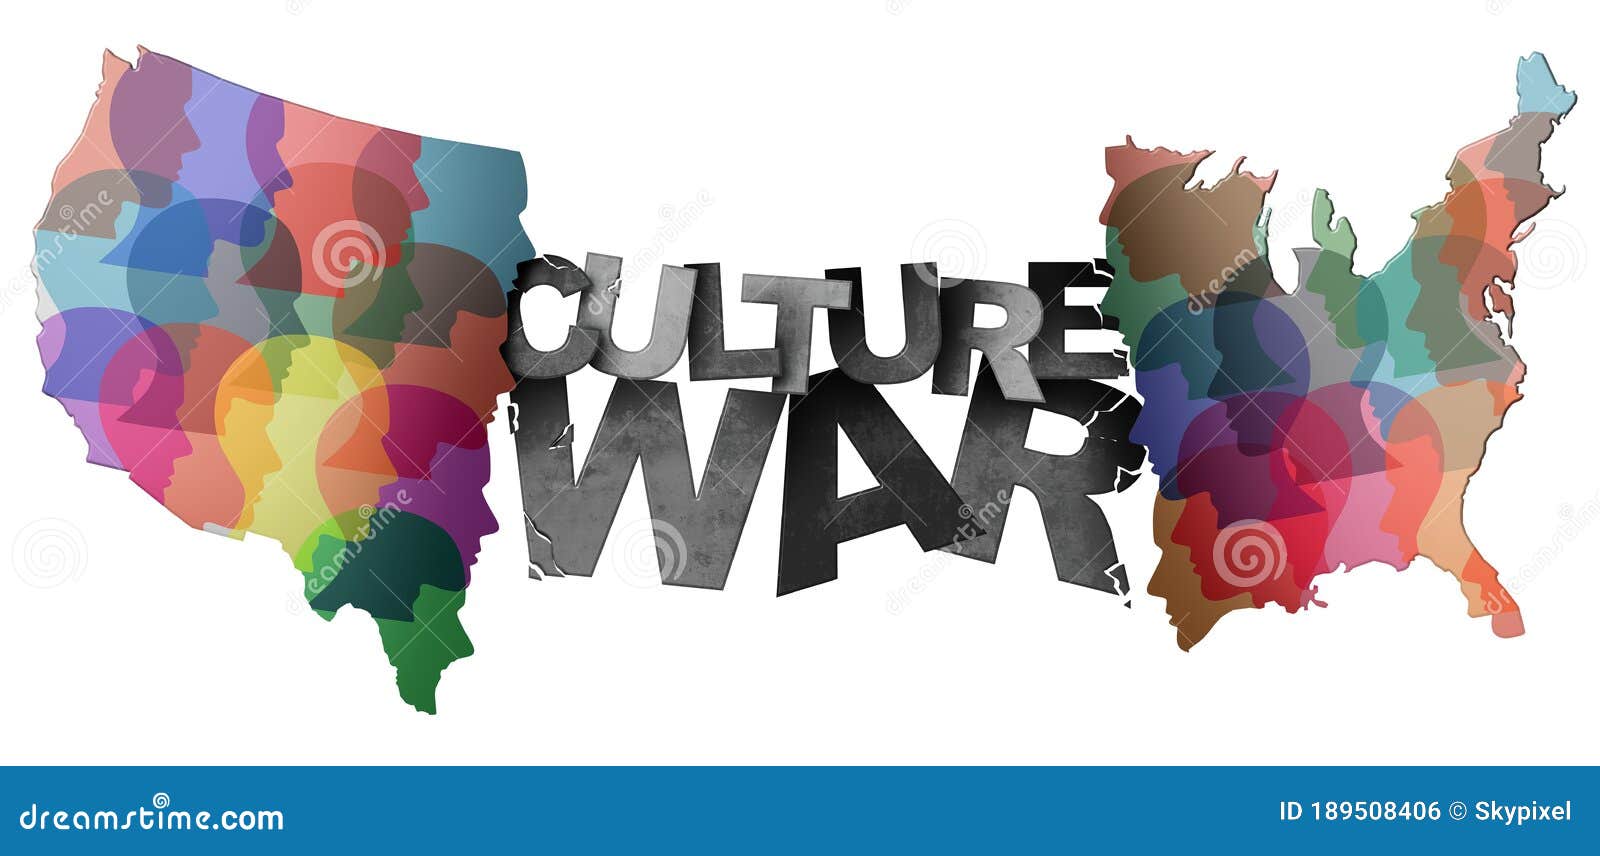 culture war